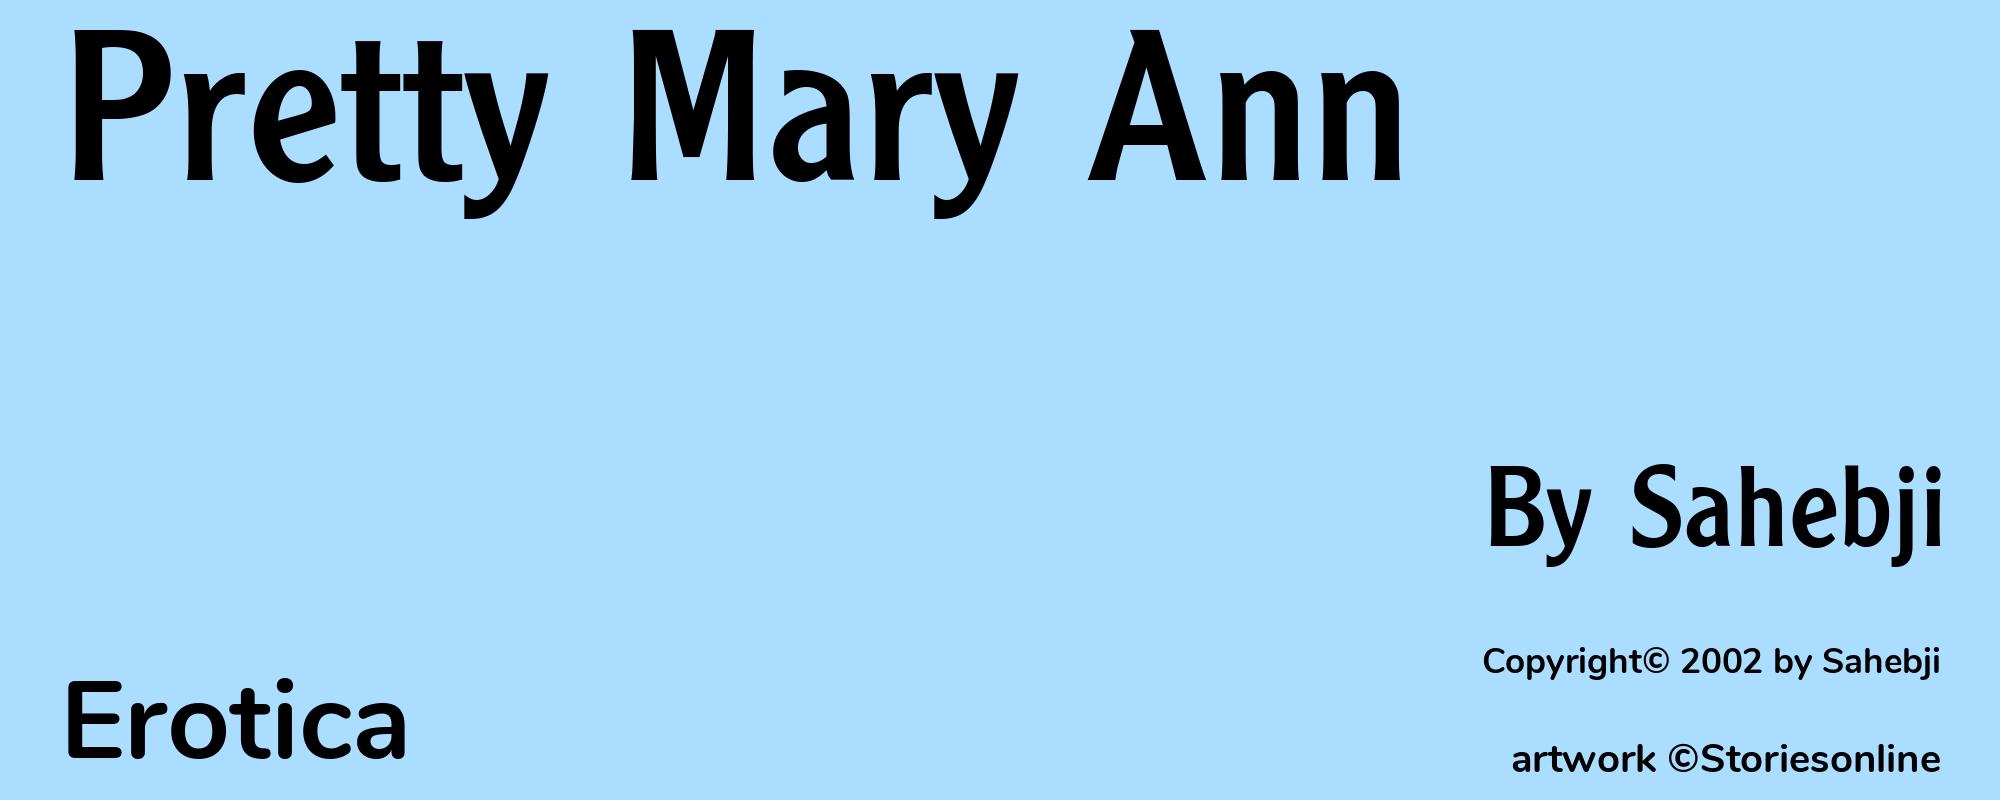 Pretty Mary Ann - Cover